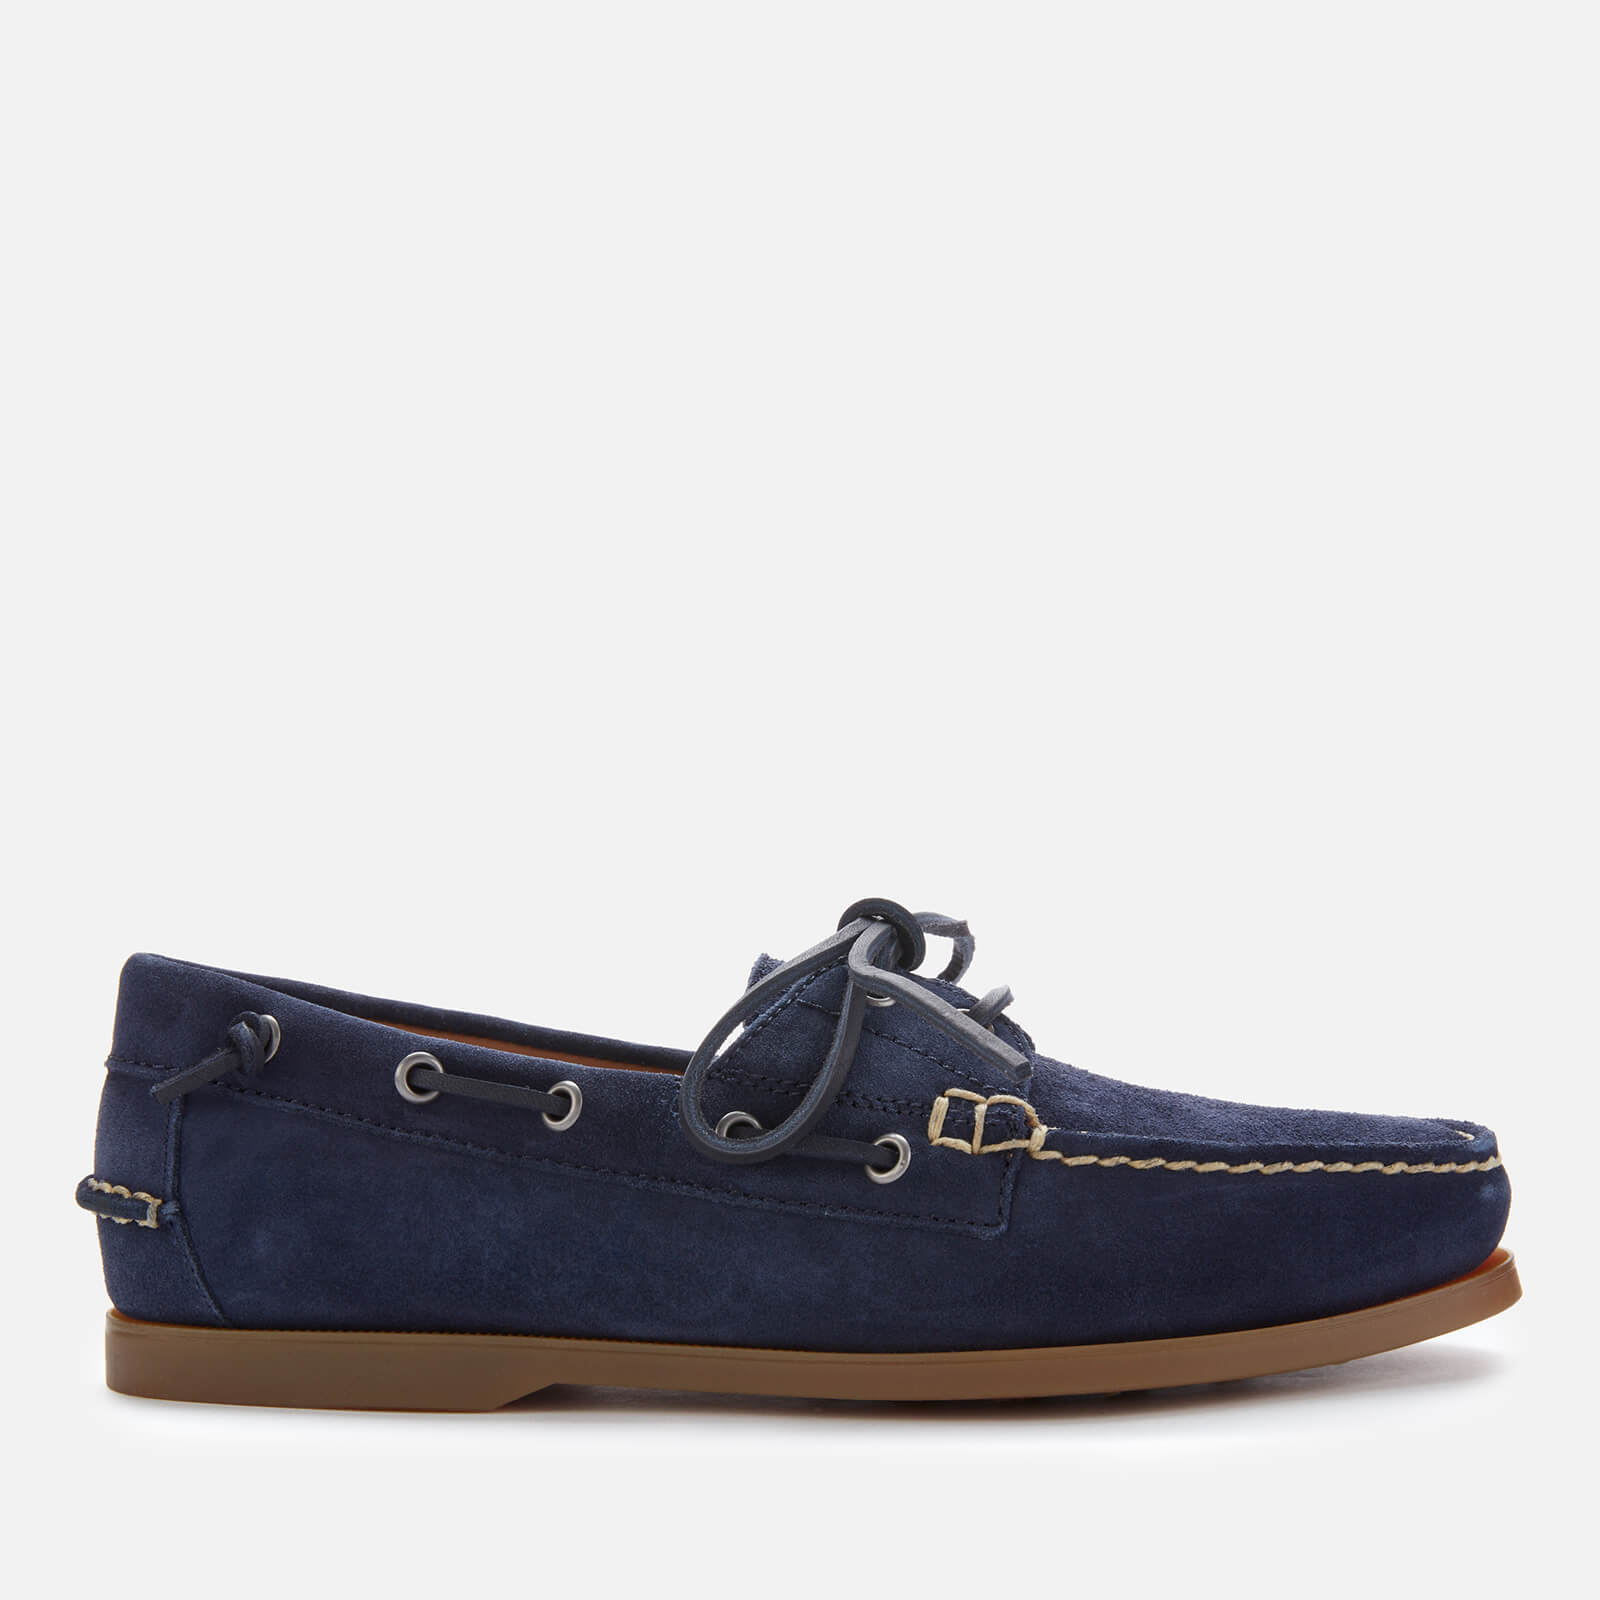 Polo Ralph Lauren Men’s Merton Suede Boat Shoes - Newport Navy